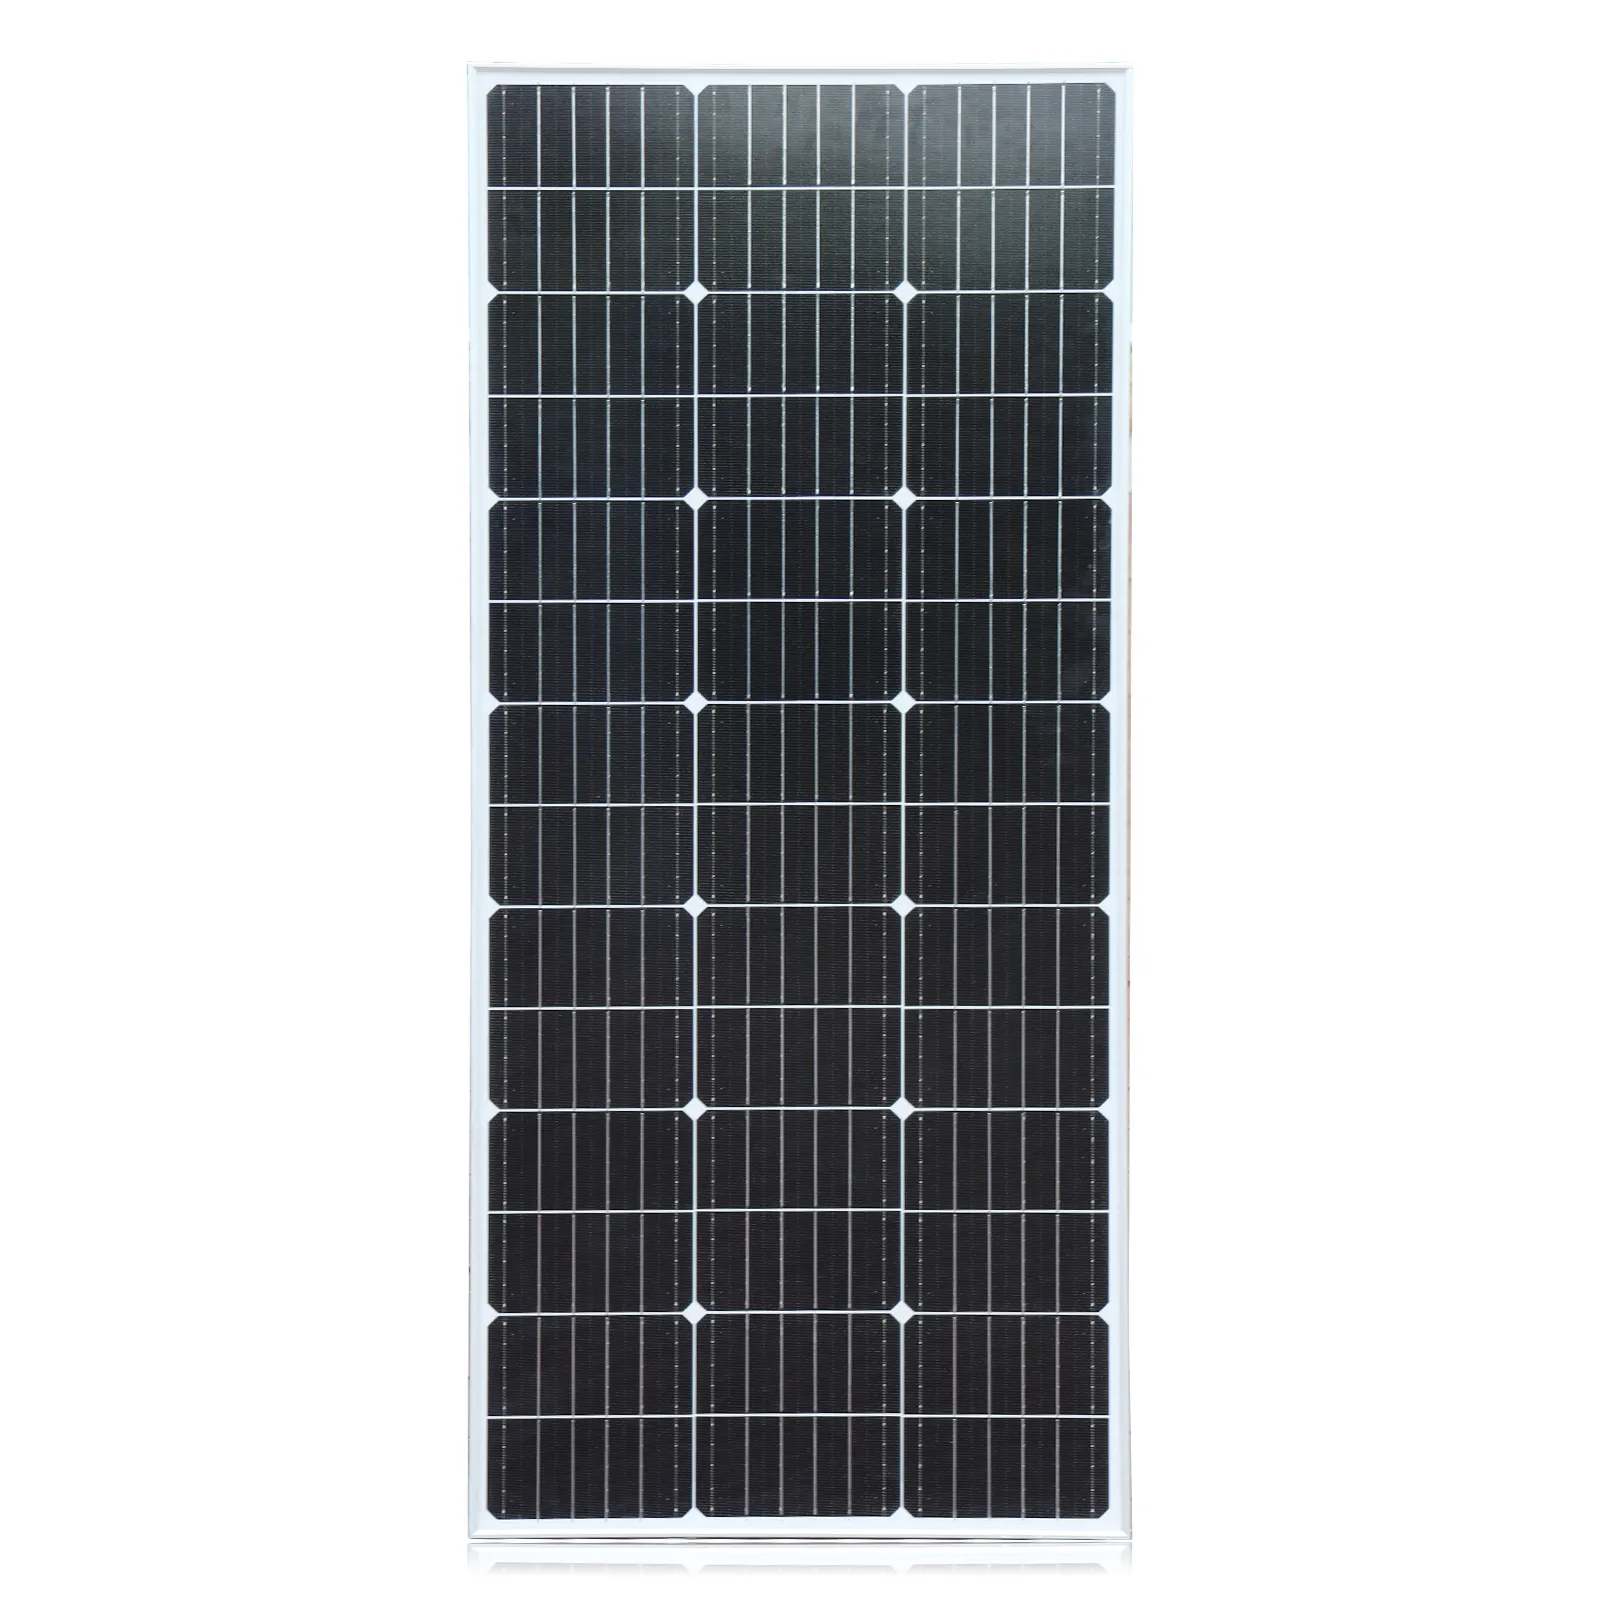 Panneau solaire 120W 23.1V fixé sur balcon/plein air/toit/terrance pour la production d'électricité